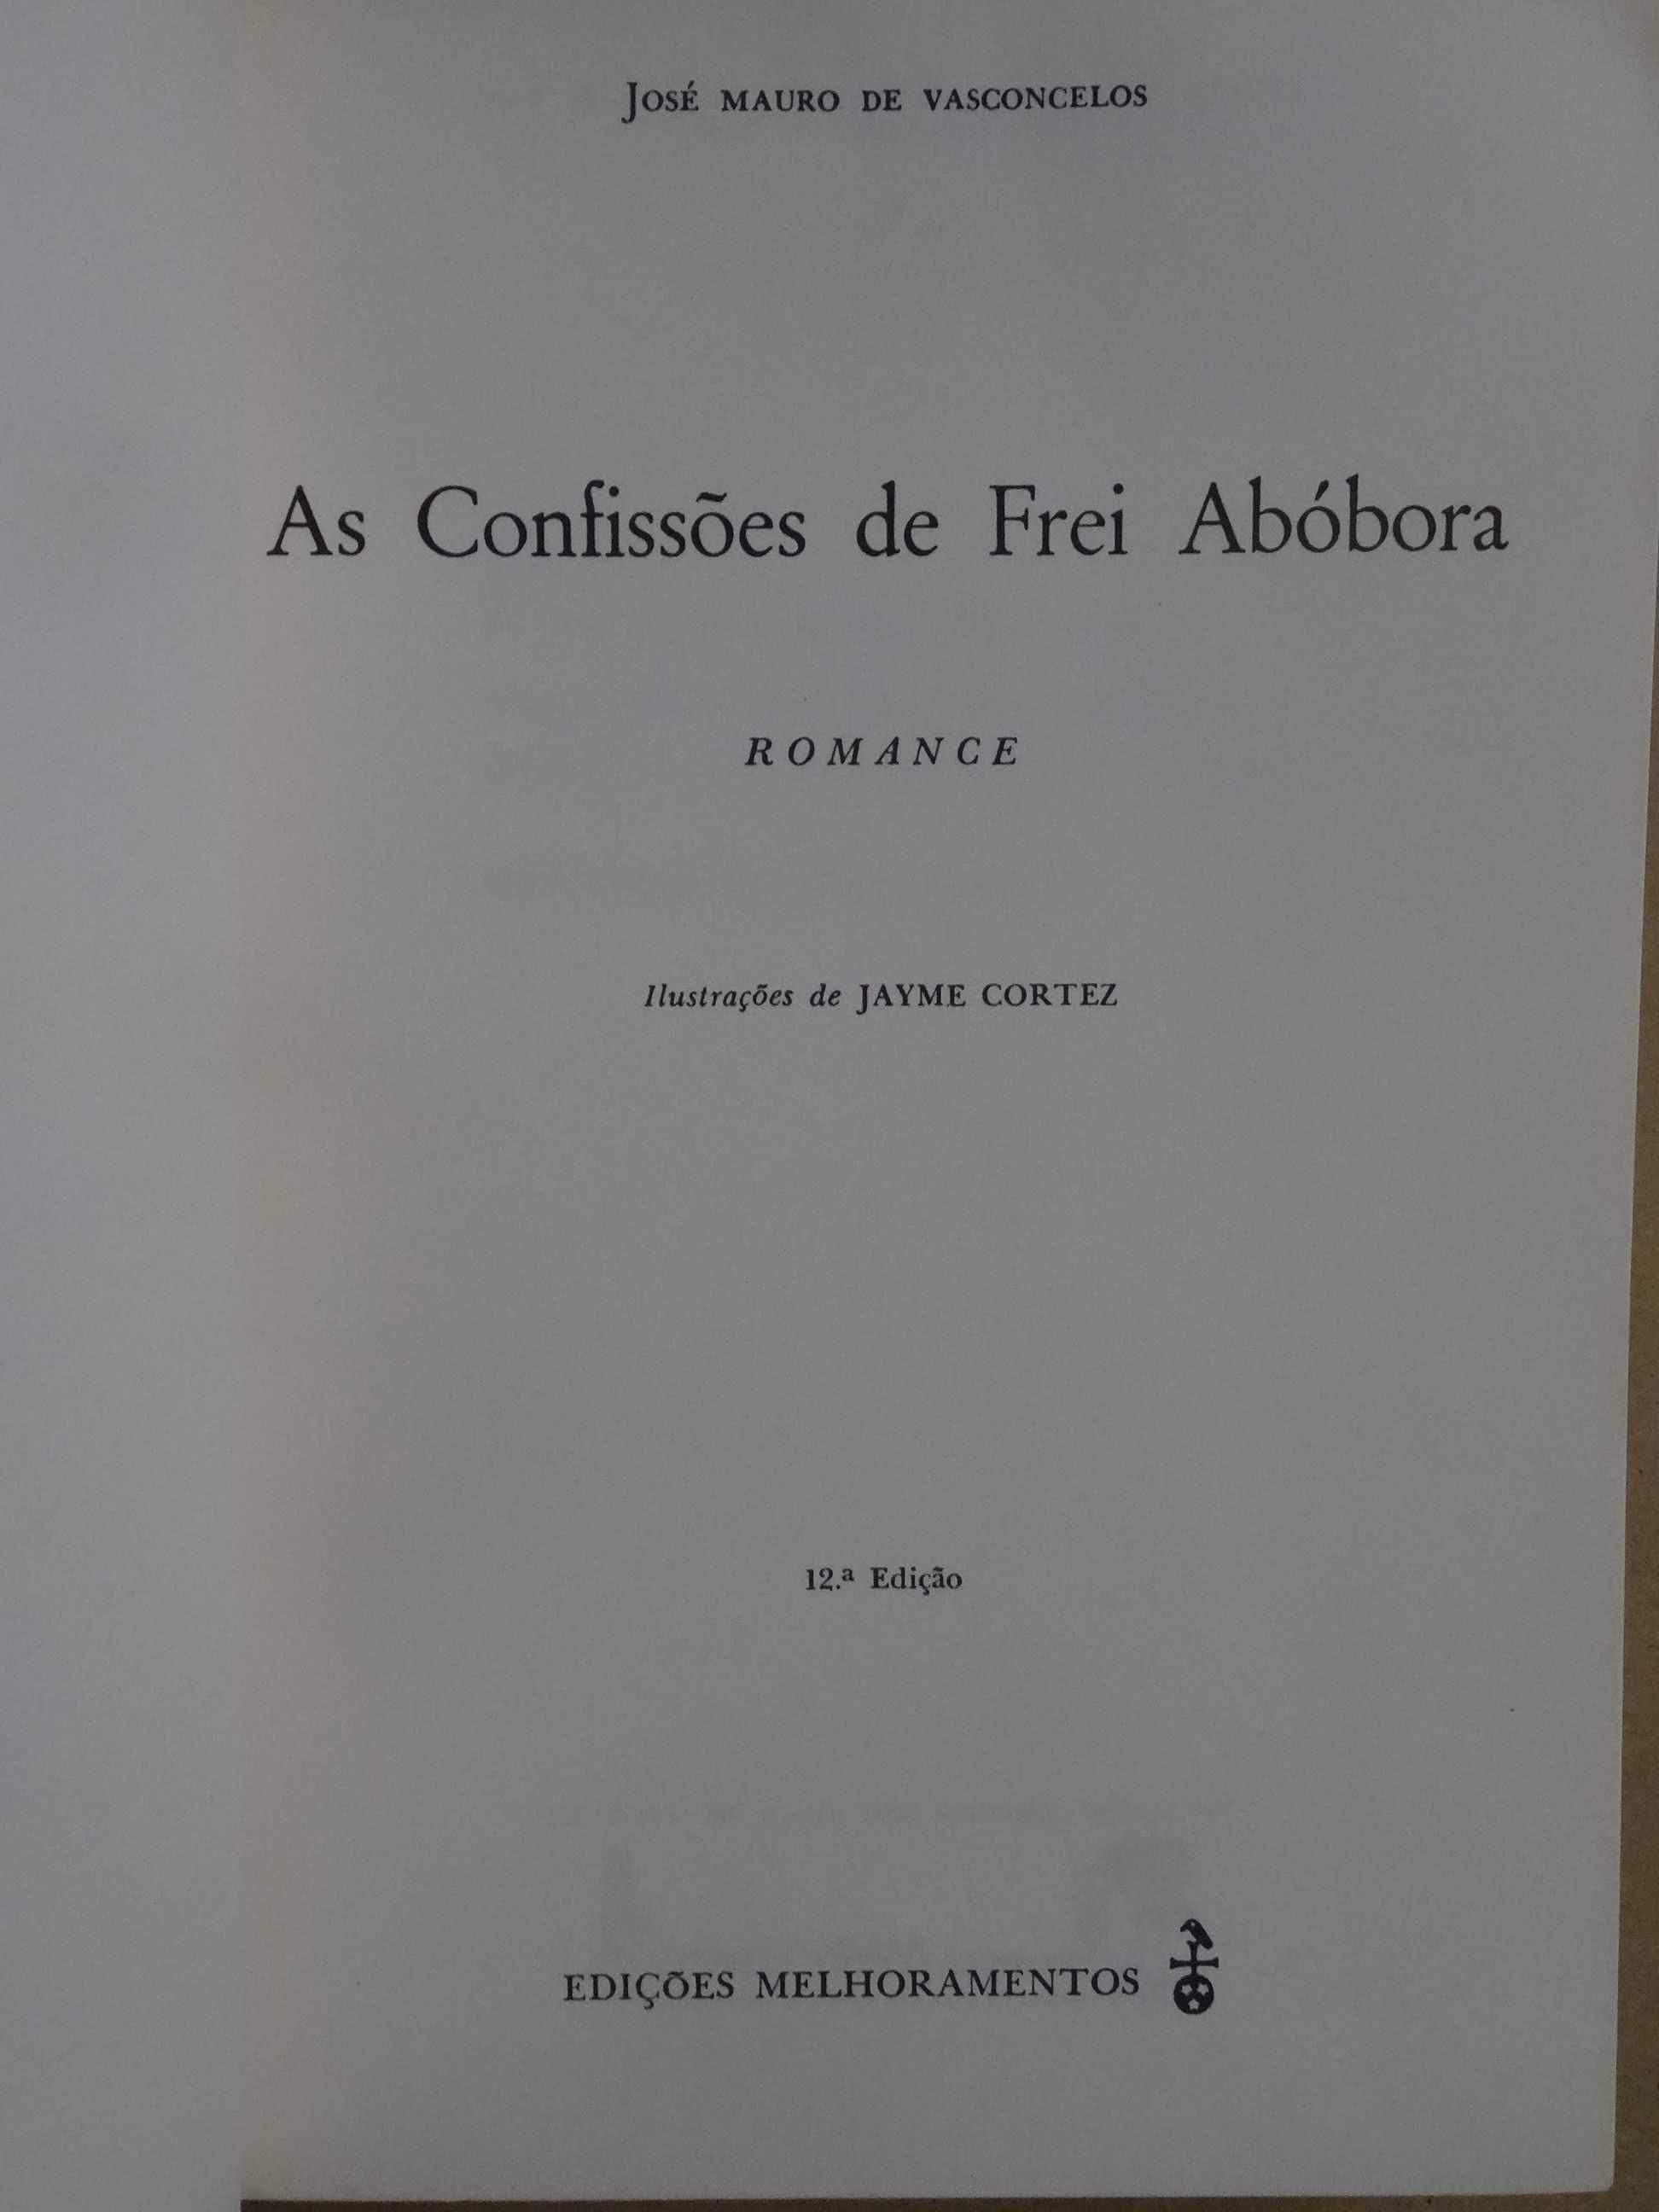 As Confissões de Frei Abóbora de José Mauro de Vasconcelos